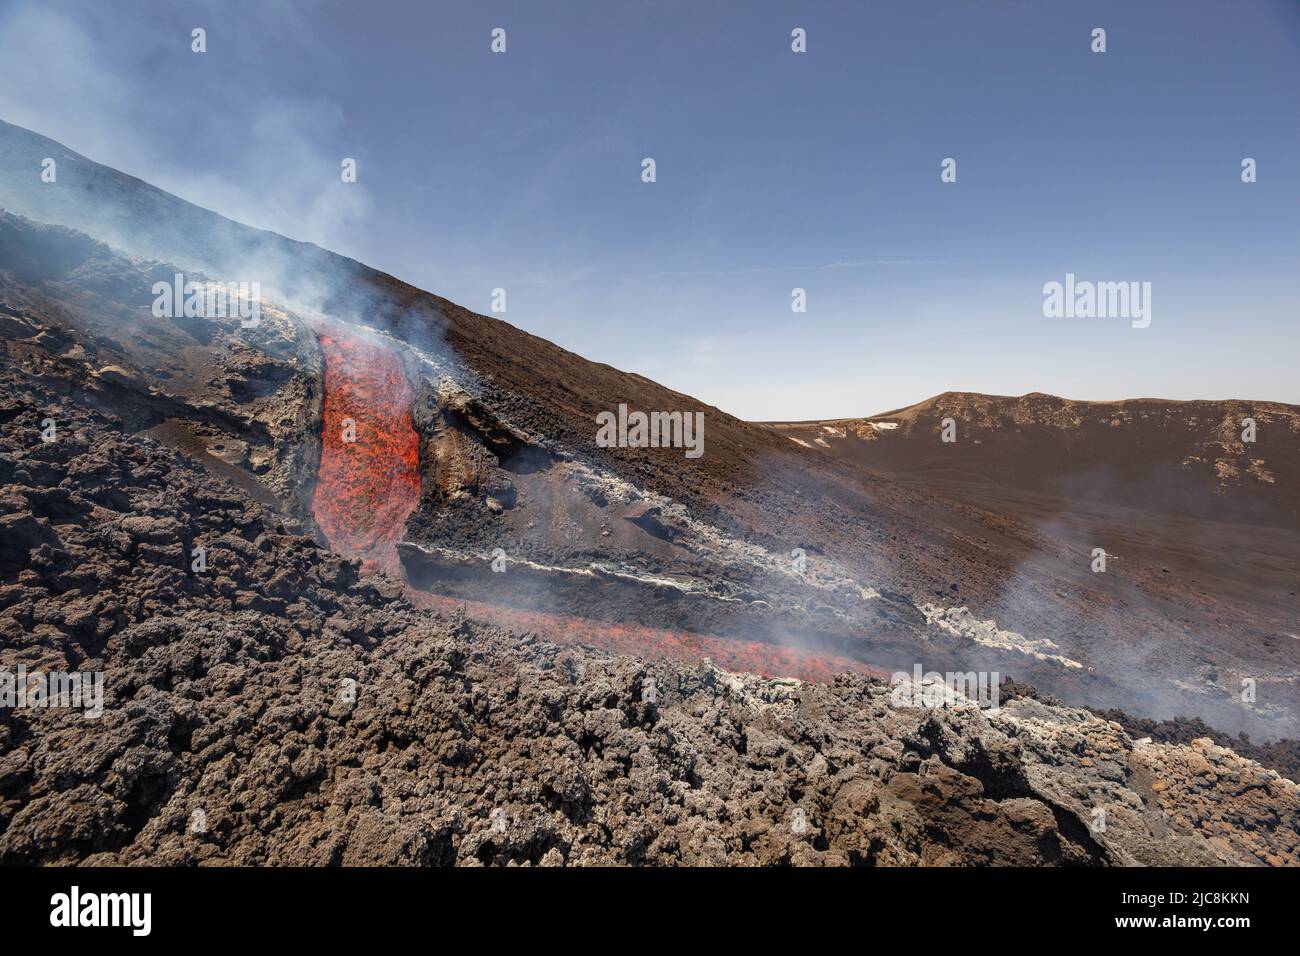 -Flujo de lava resplandeciente en el volcán Etna en erupción - Turismo de Sicilia Foto de stock